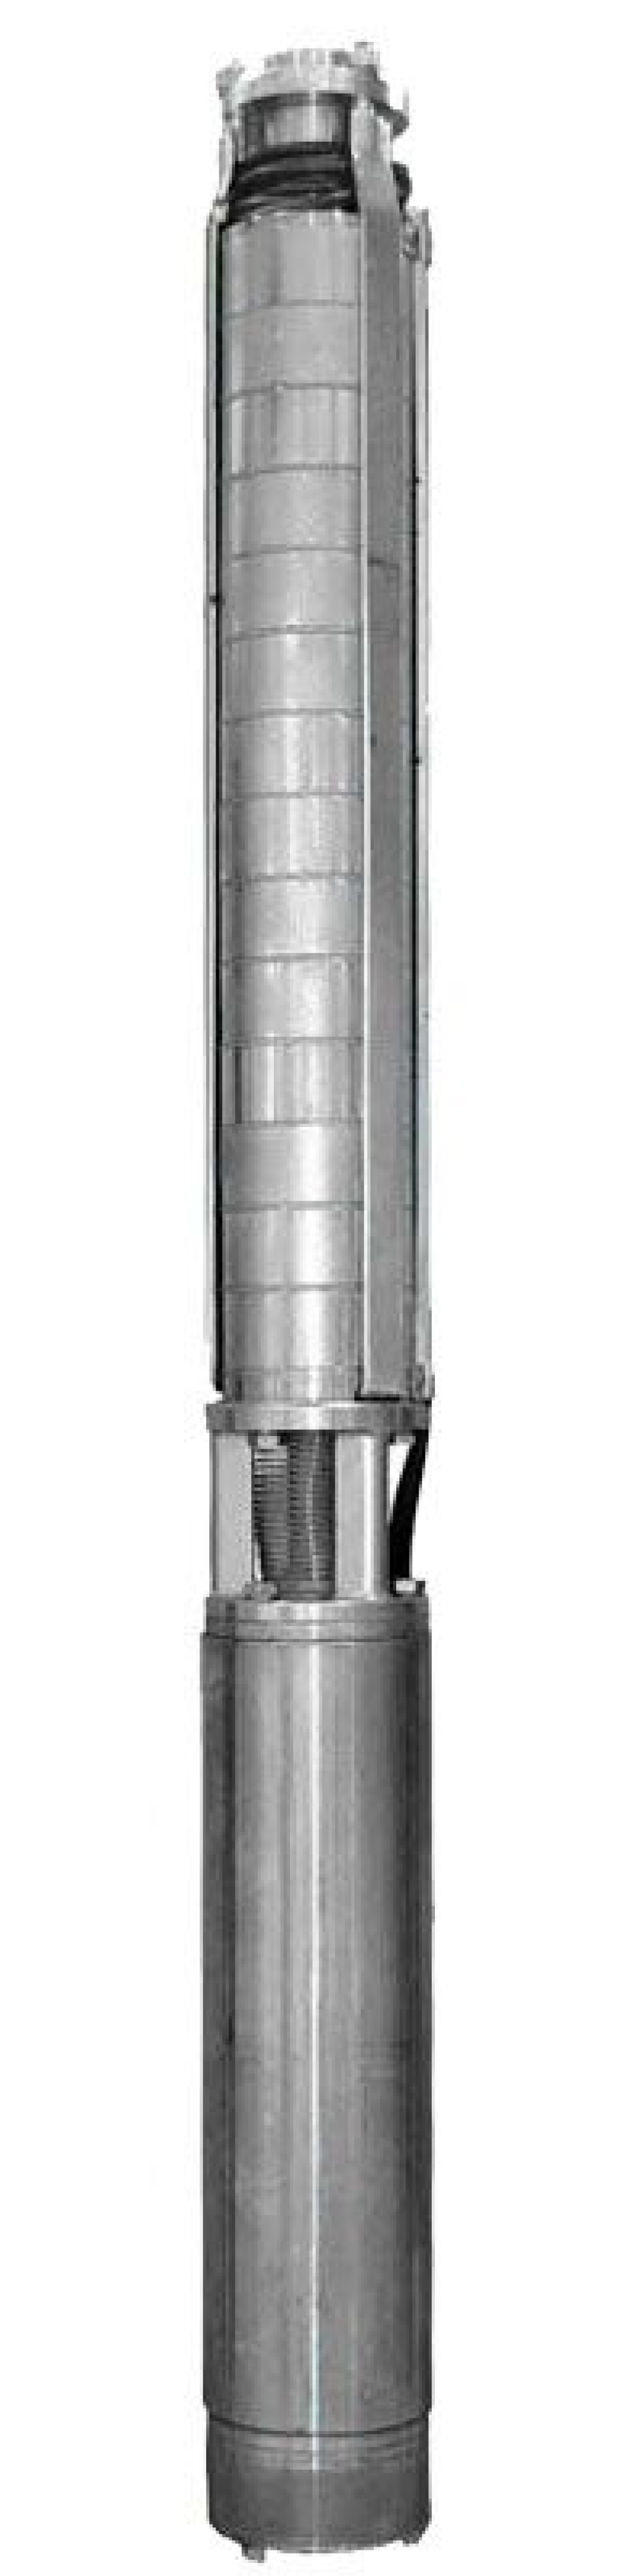 Насос скважинный Ливнынасос ЭЦВ 4-2.5-180 центробежный, производительность 2.5 м3/час, напор 180 м, мощность 3 кВт, напряжение трехфазной сети 380В